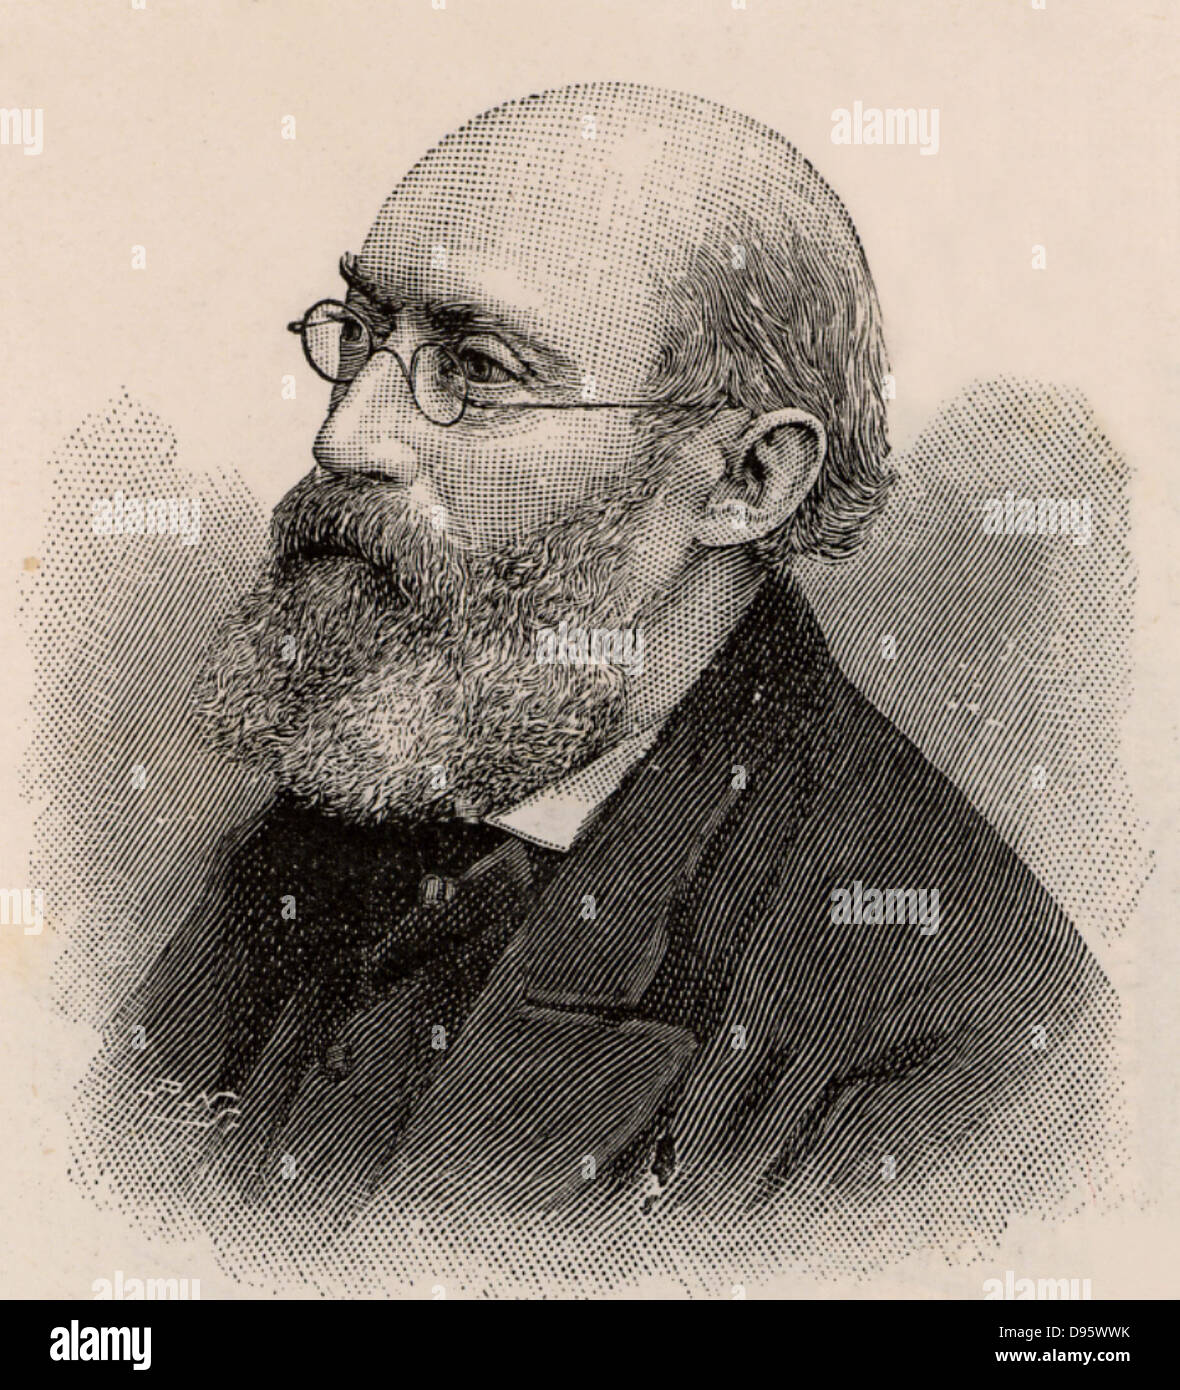 George Buchanan (1831-1895), englischer Arzt, der ein Interesse an der Verbesserung der sanitären Bedingungen. Chief Medical Officer für die lokale Regierung (1879-1892). Gravur, 1895. Stockfoto